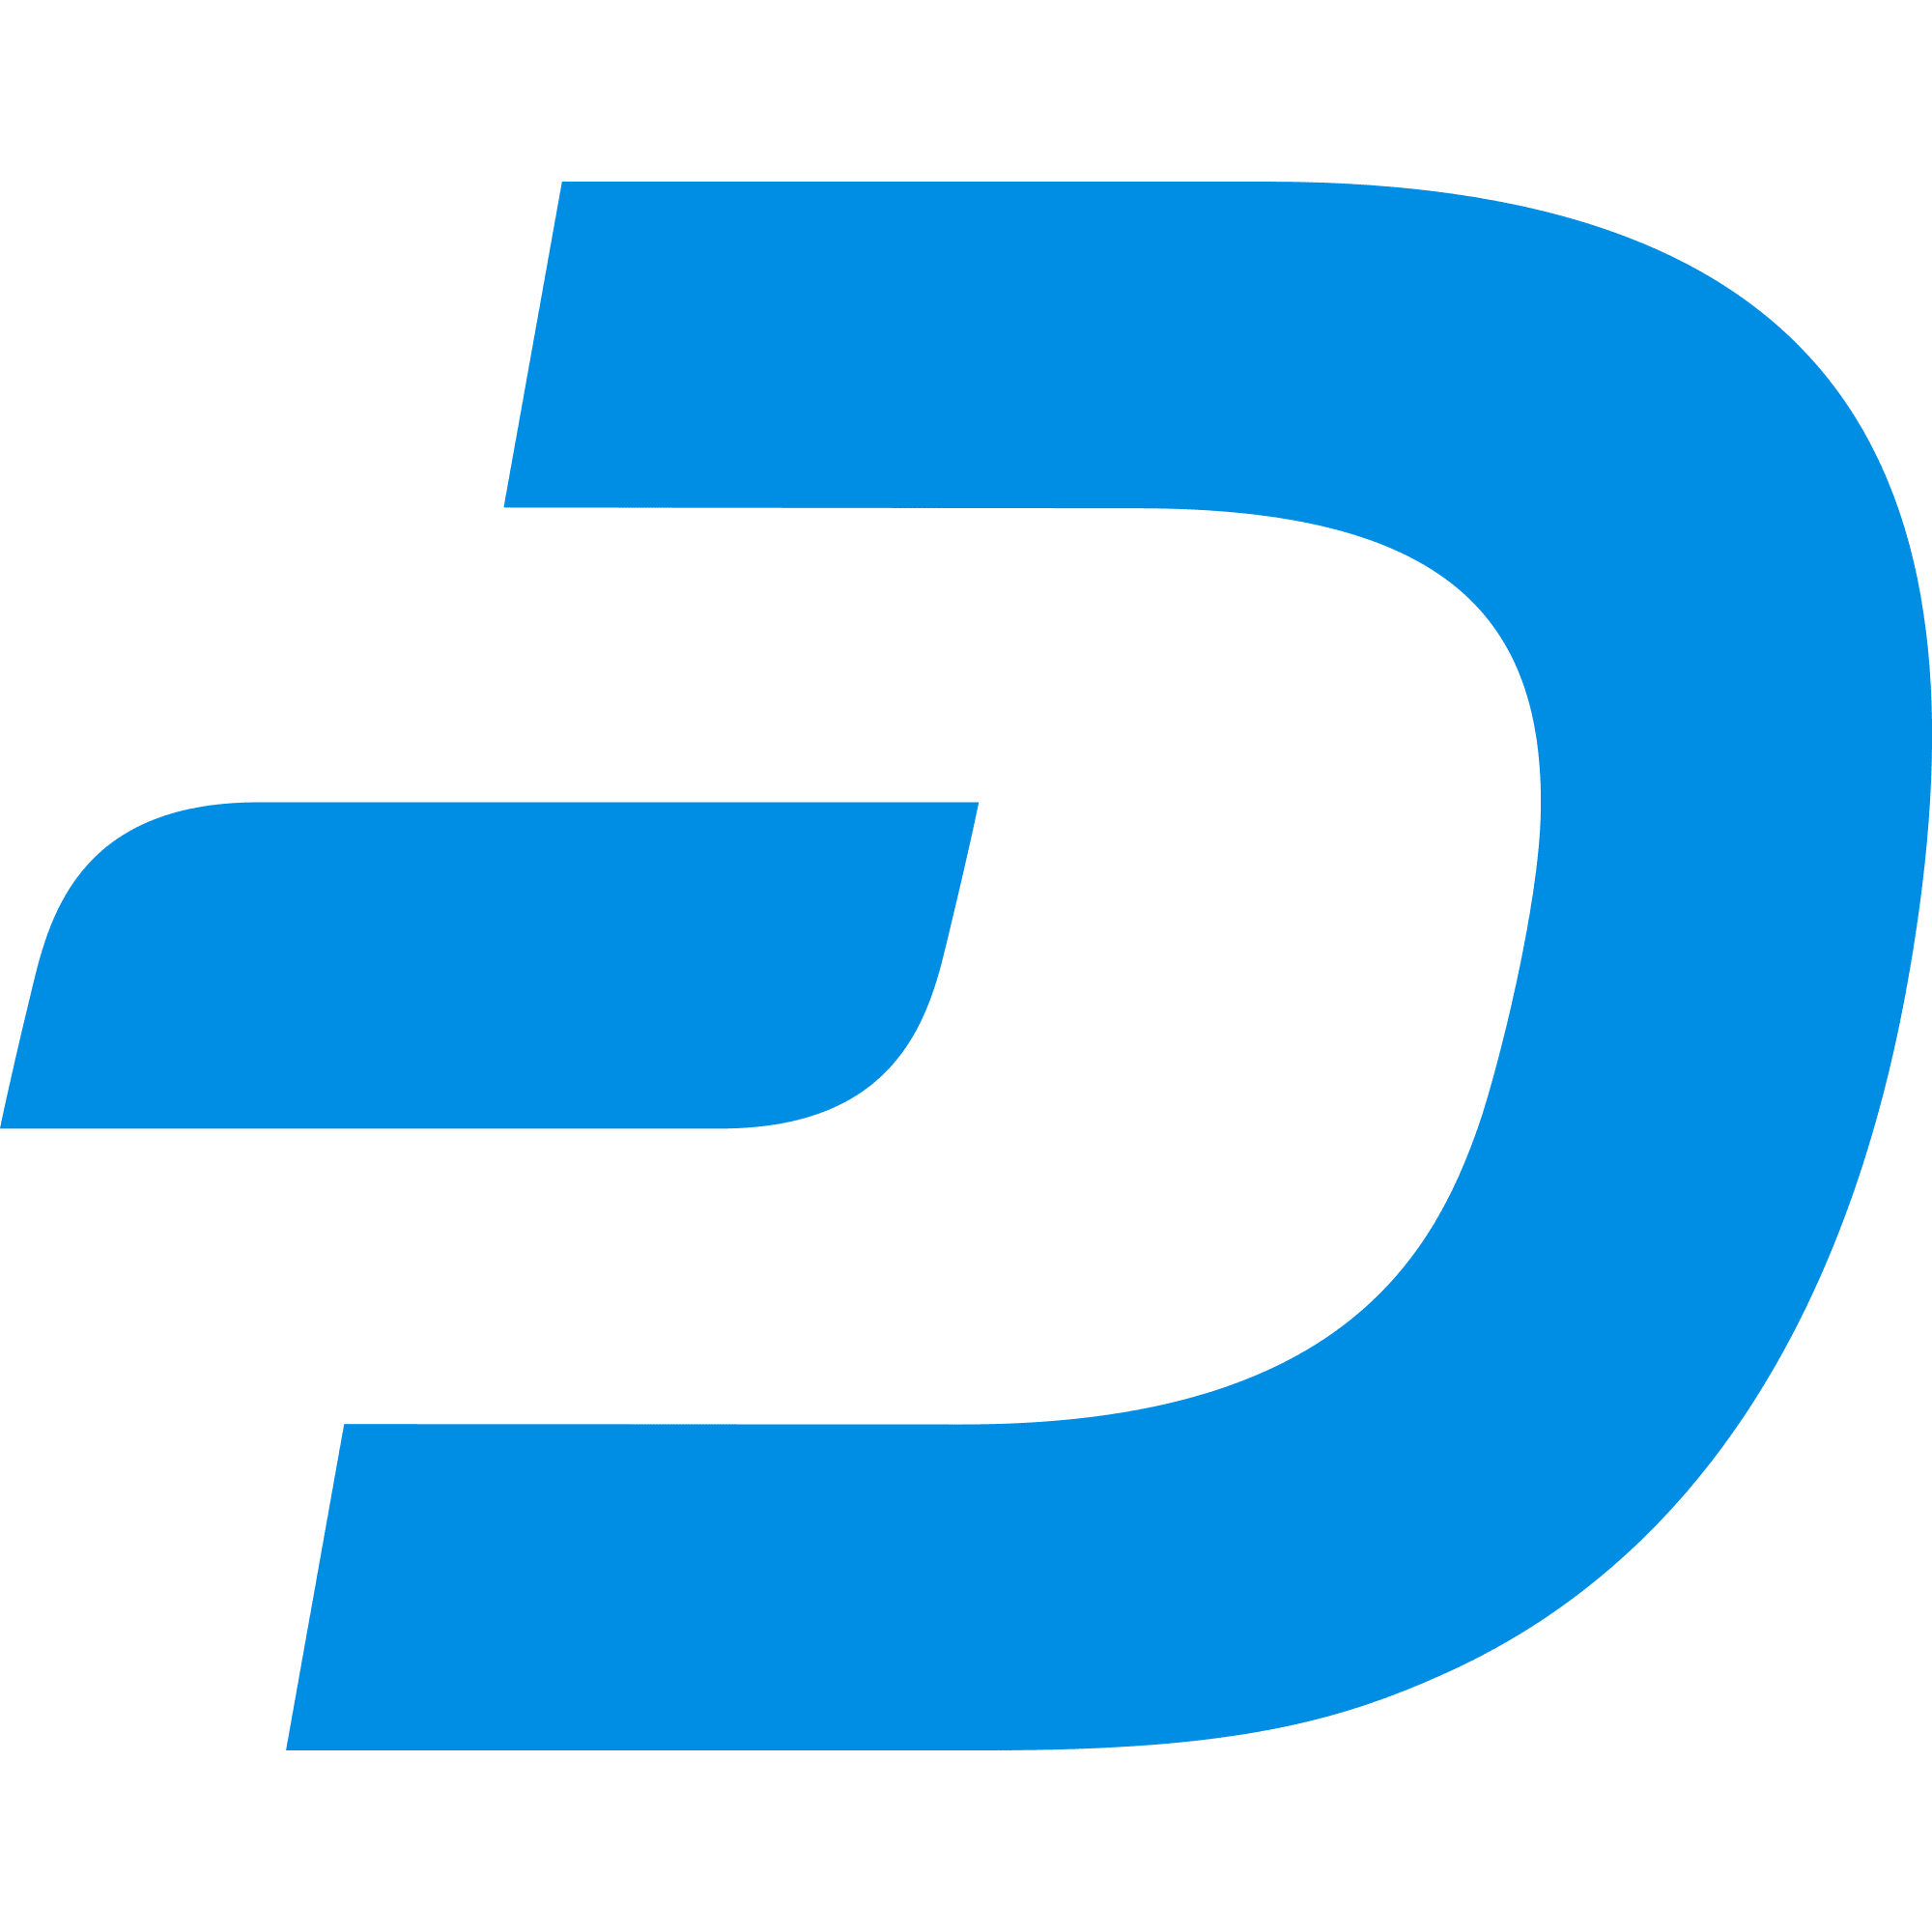 Dash logo in png format